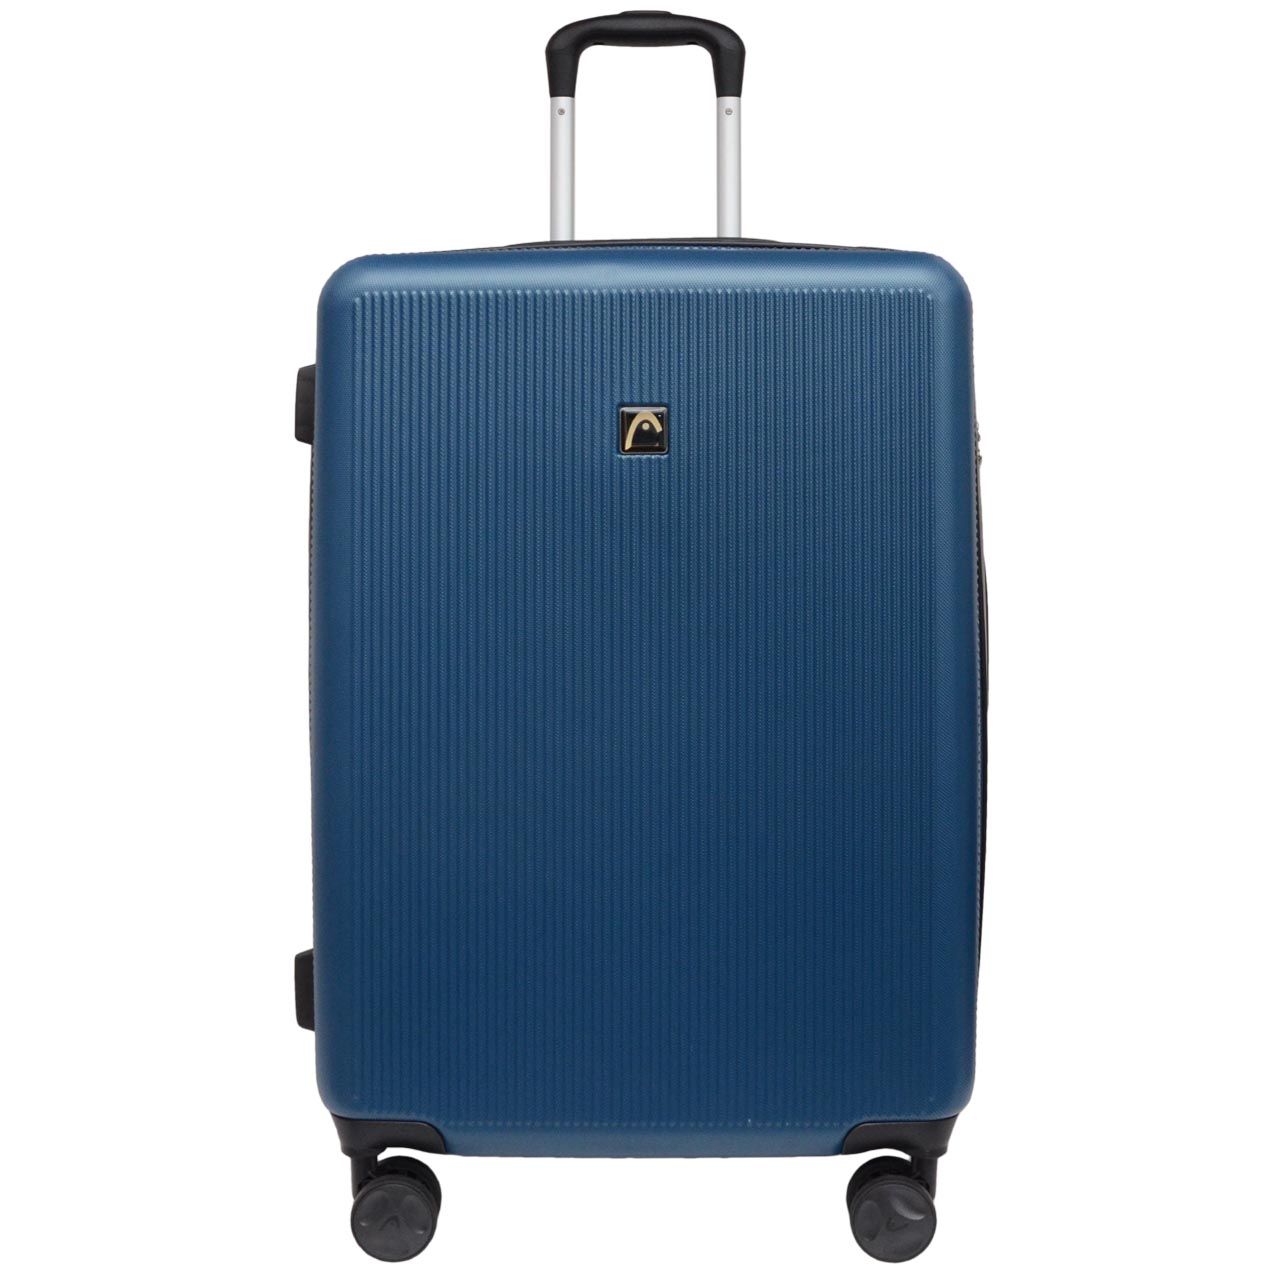 چمدان هد مدل HL 006 سایز متوسط -  - 2